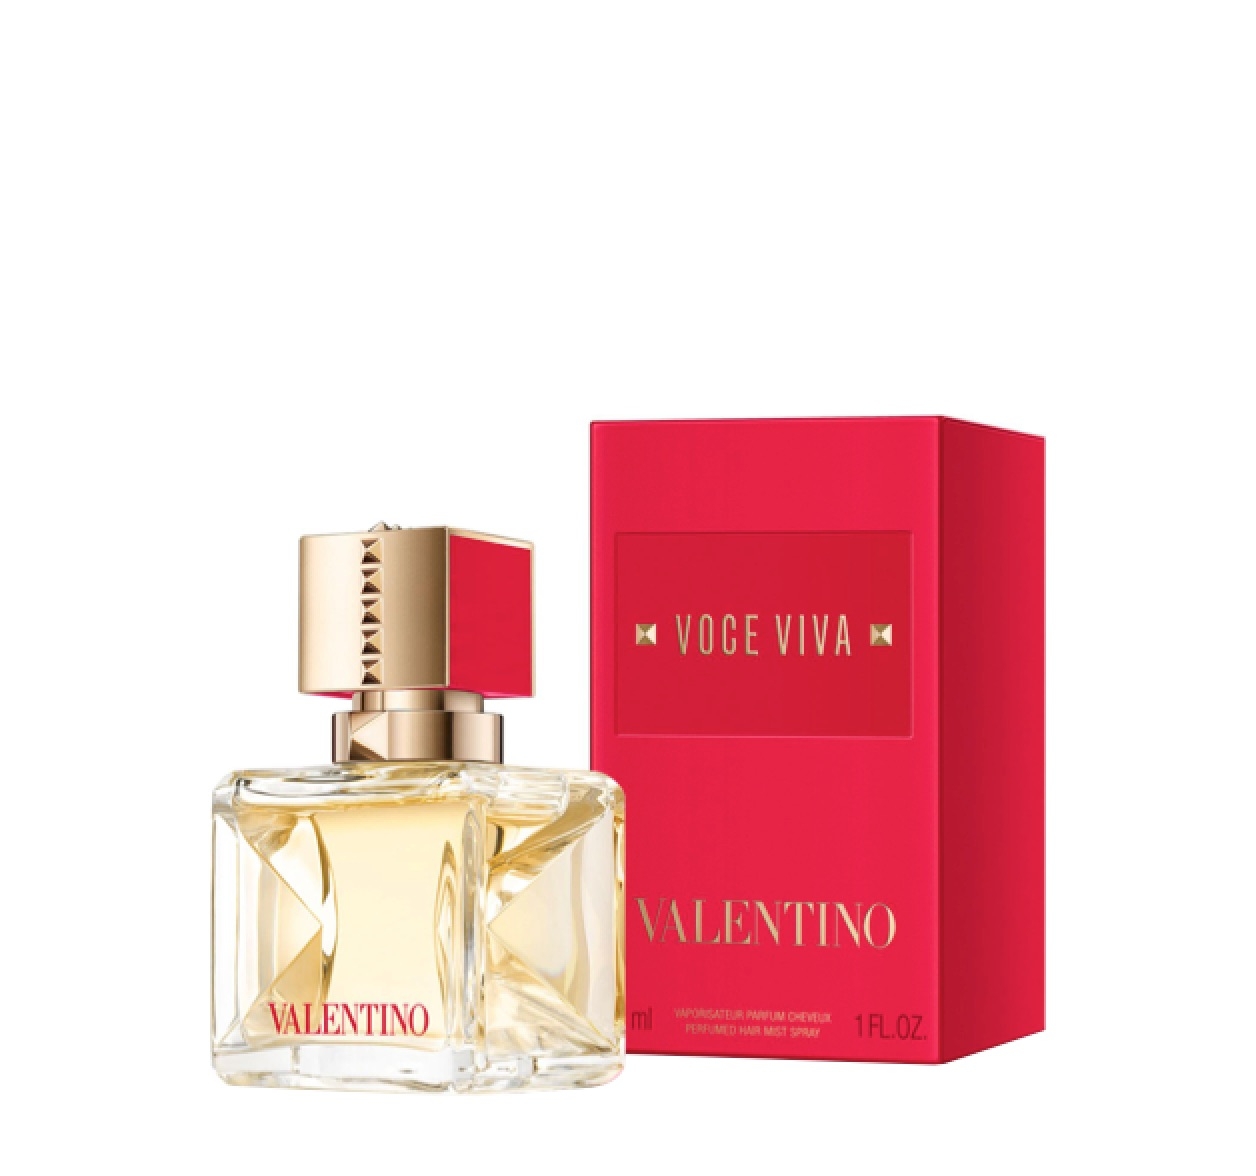 Valentino Voce Viva Hair Mist Hair Mist 30ml – Perfume Essence